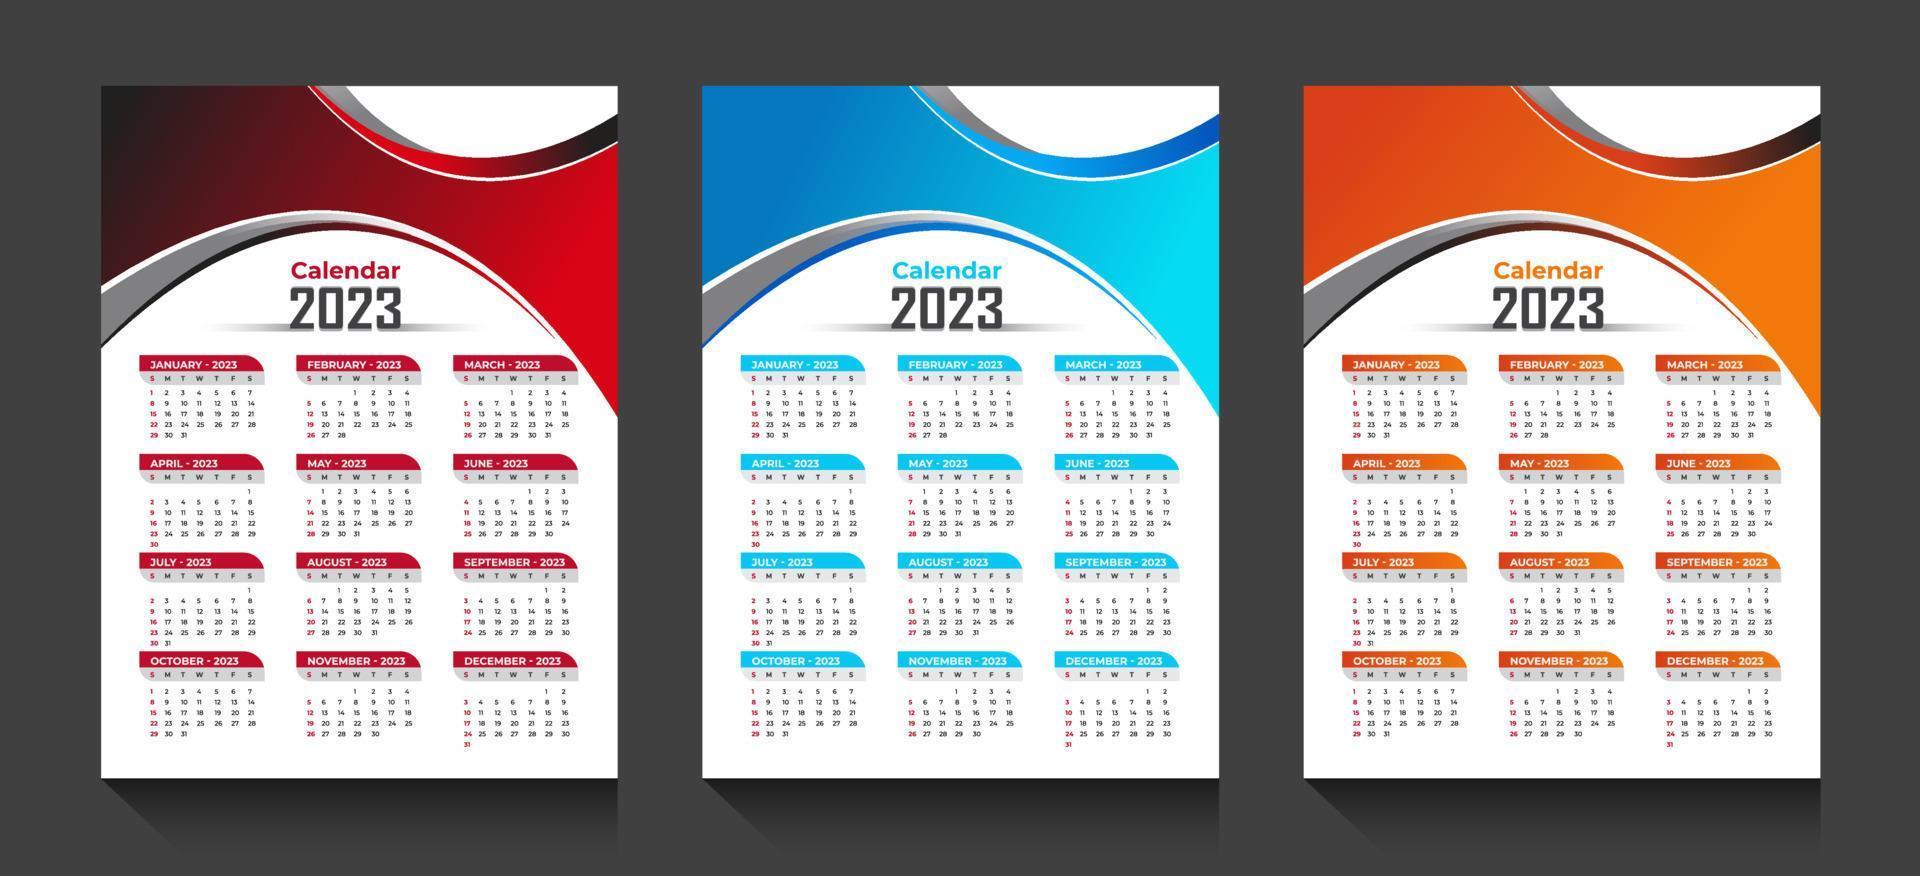 kalenderdesign 2023 vektor